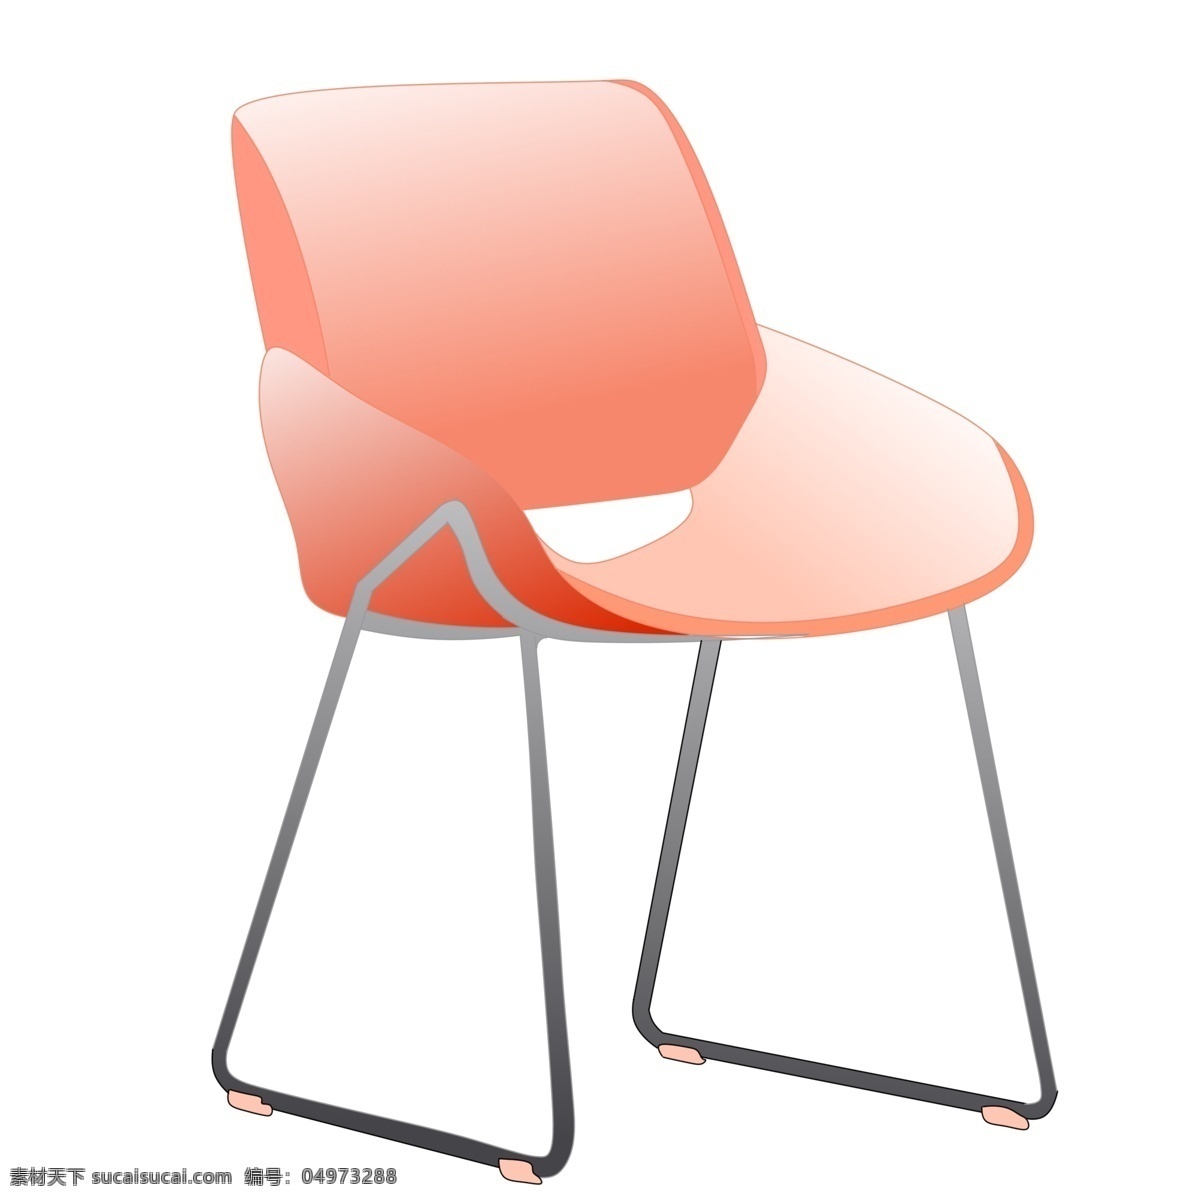 创意 红色 卡通 座椅 红色休闲椅子 红色椅子 卡通椅子插画 桌椅 家具 精美的家具 家具插画